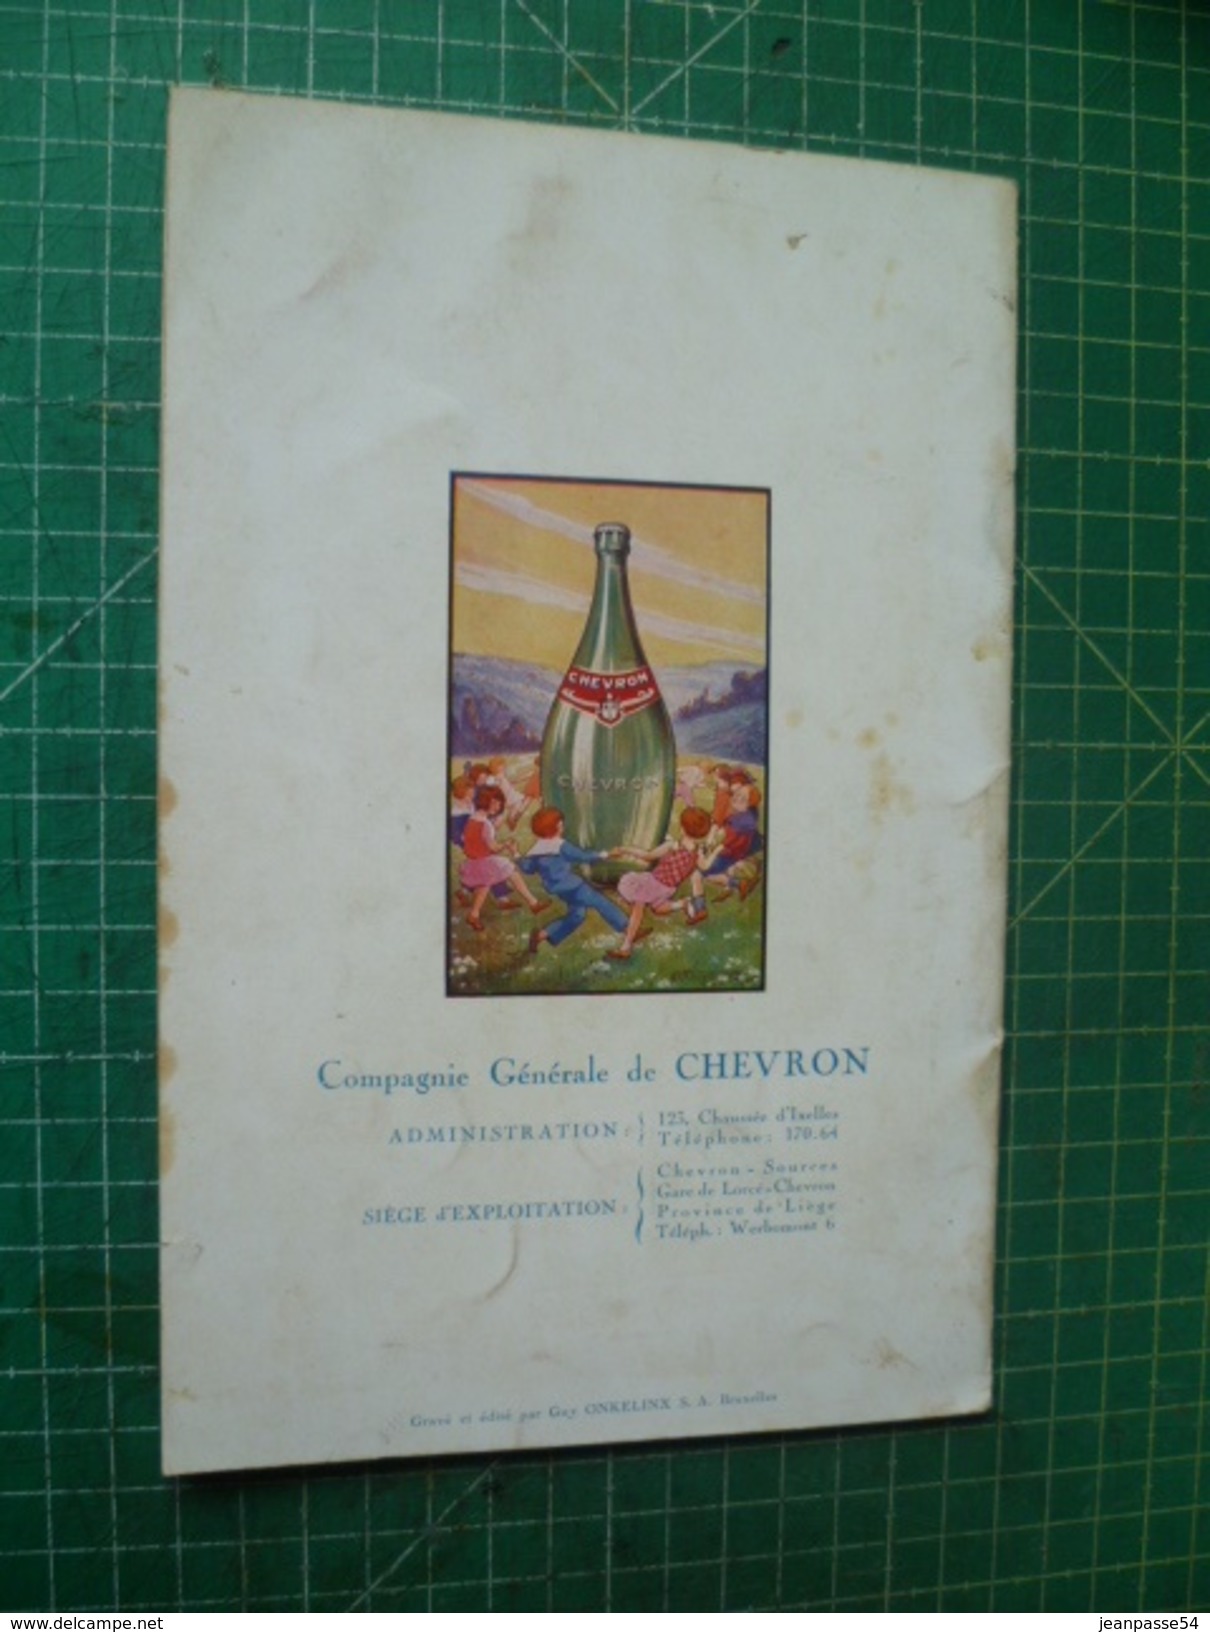 Les Sources Minérales De Chevron. Superbe Plaquette Publicitaire Illustrée De 1927 - Belgium